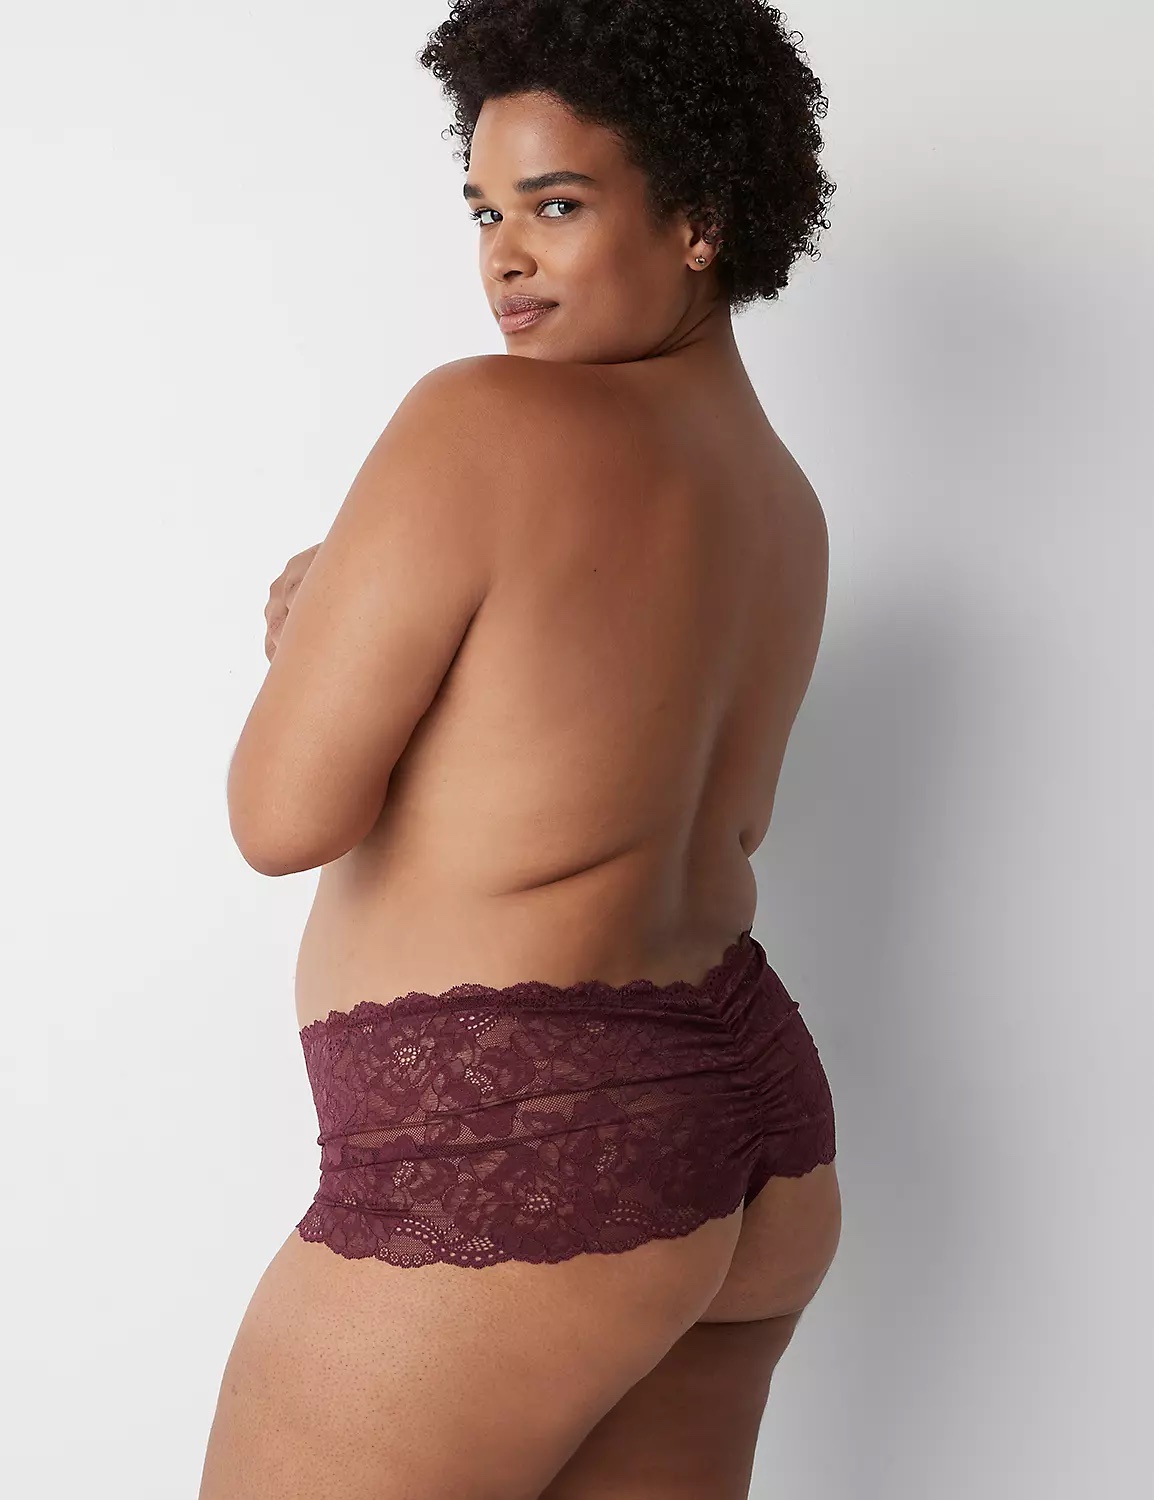 barbara thorsen share sexy older women in panties photos